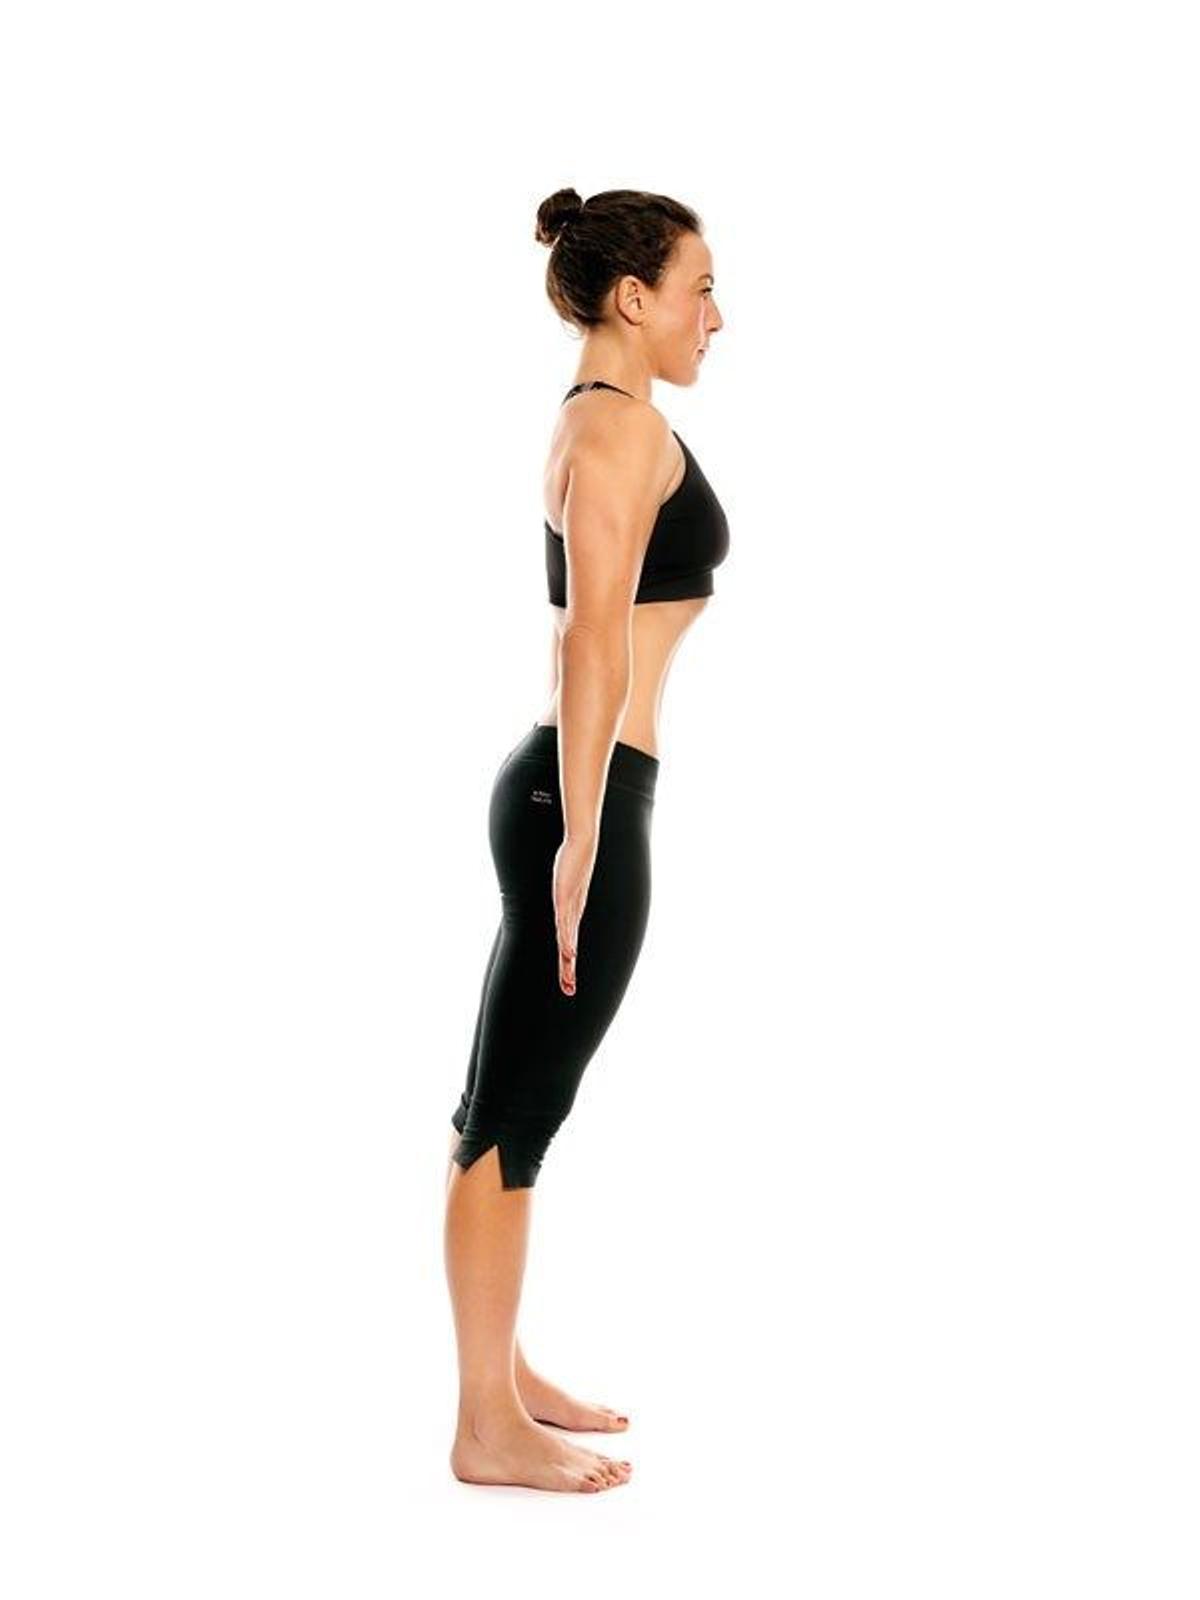 Operación bikini 2015: hipopresivos abdominales sin esfuerzo - estatico 1